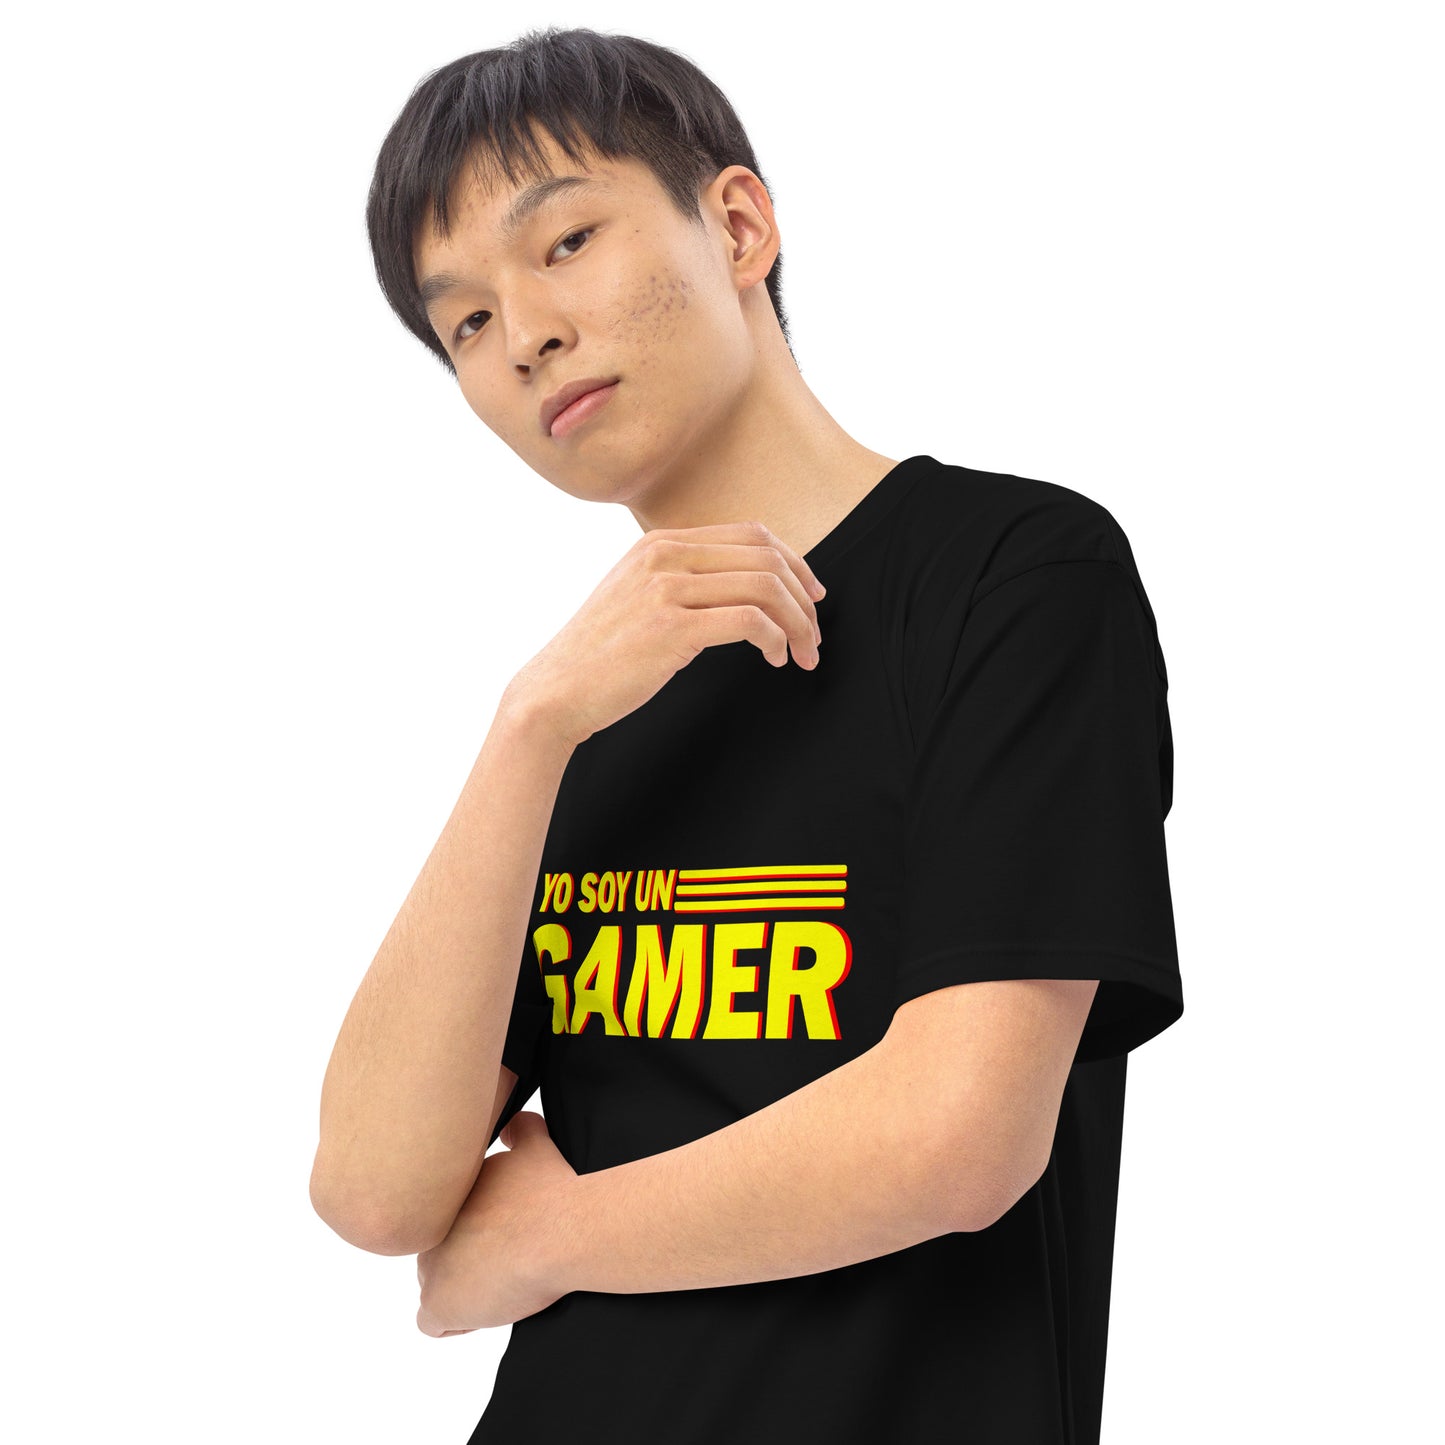 YSUG Power - Shirt